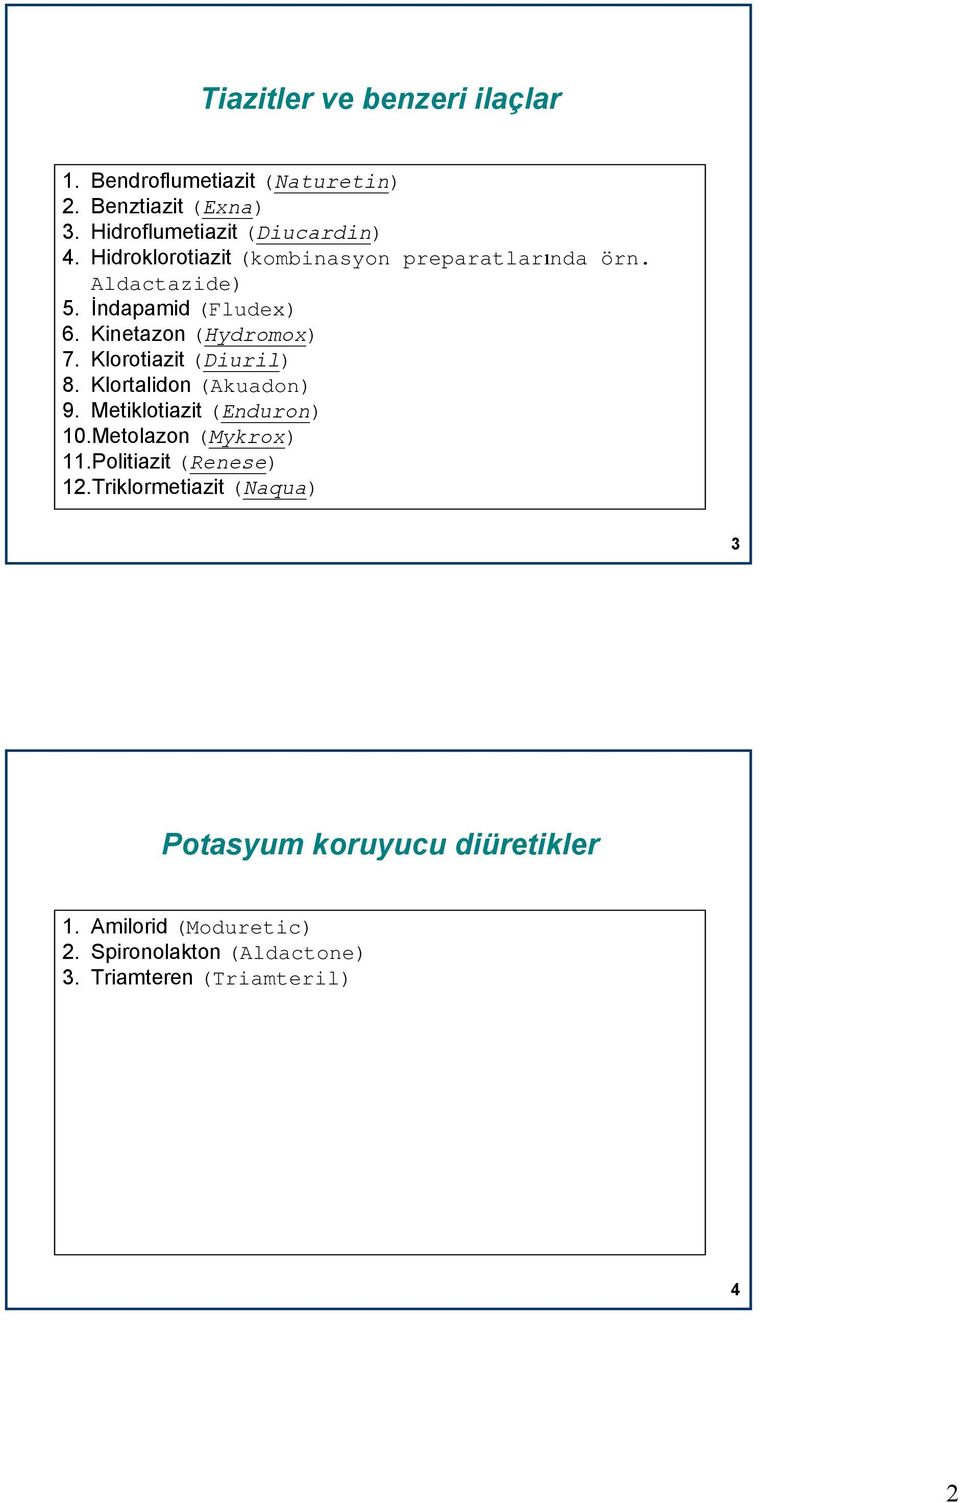 Klorotiazit (Diuril) 8. Klortalidon (Akuadon) 9. Metiklotiazit (Enduron) 10.Metolazon (Mykrox) 11.Politiazit (Renese) 12.